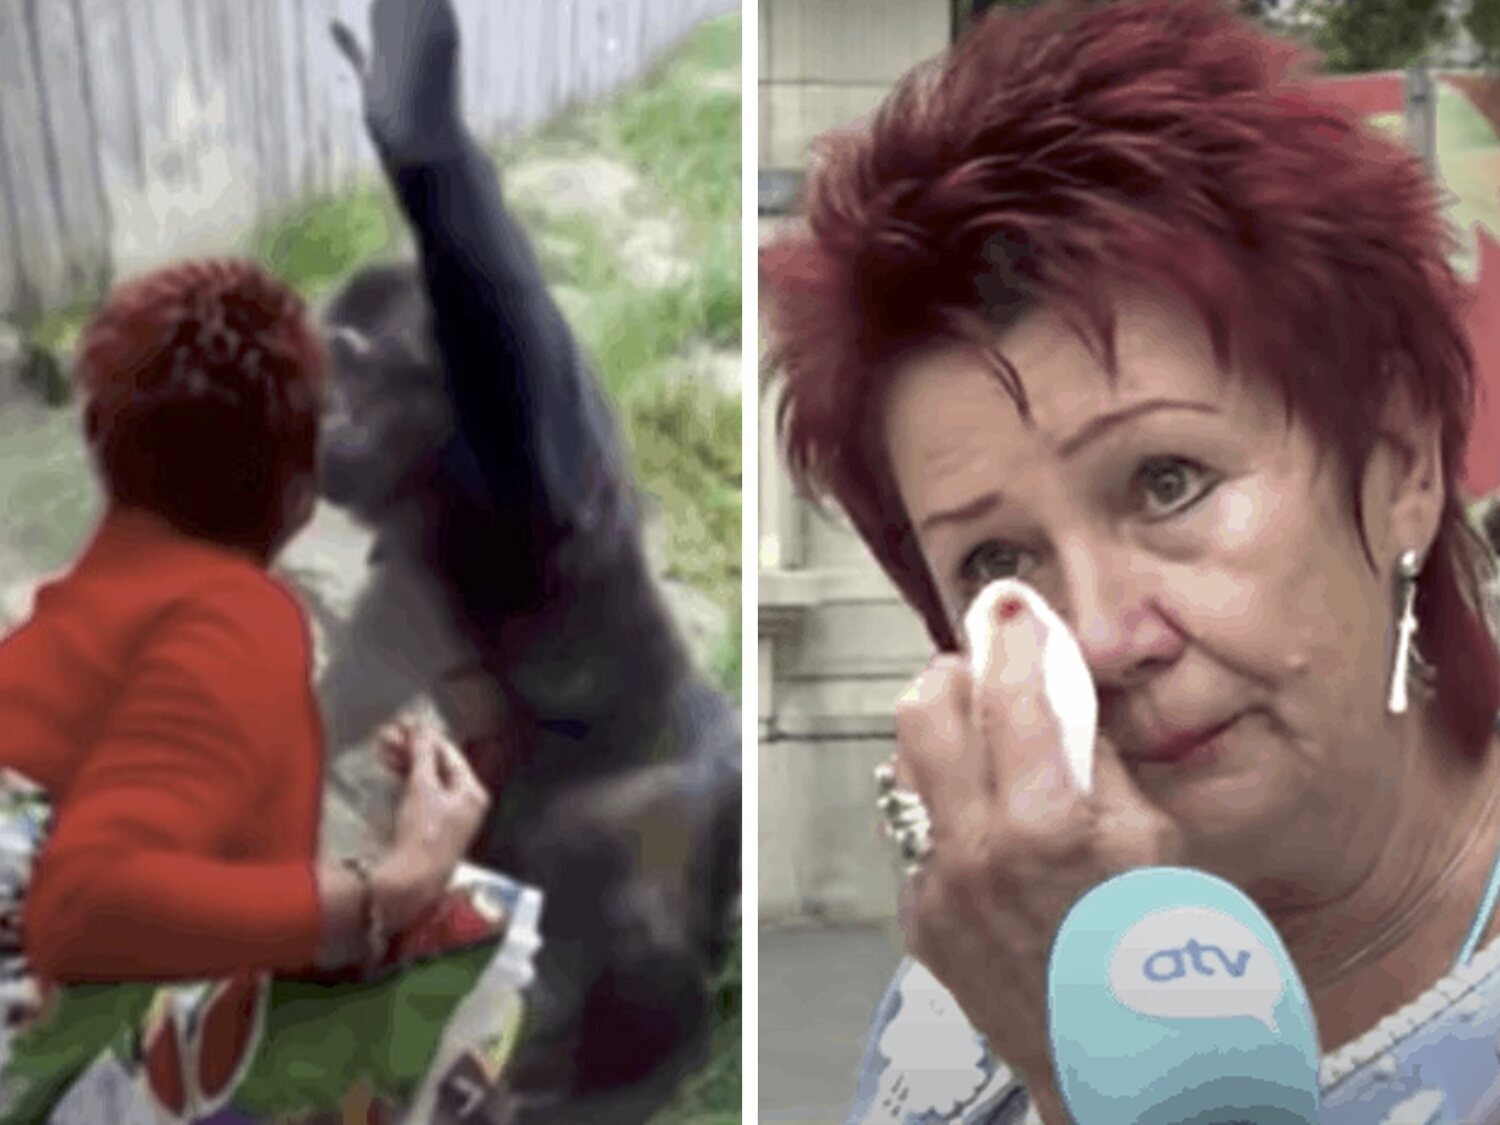 Prohíben entrar en un zoo de Bélgica a una mujer por comenzar una relación con un chimpancé